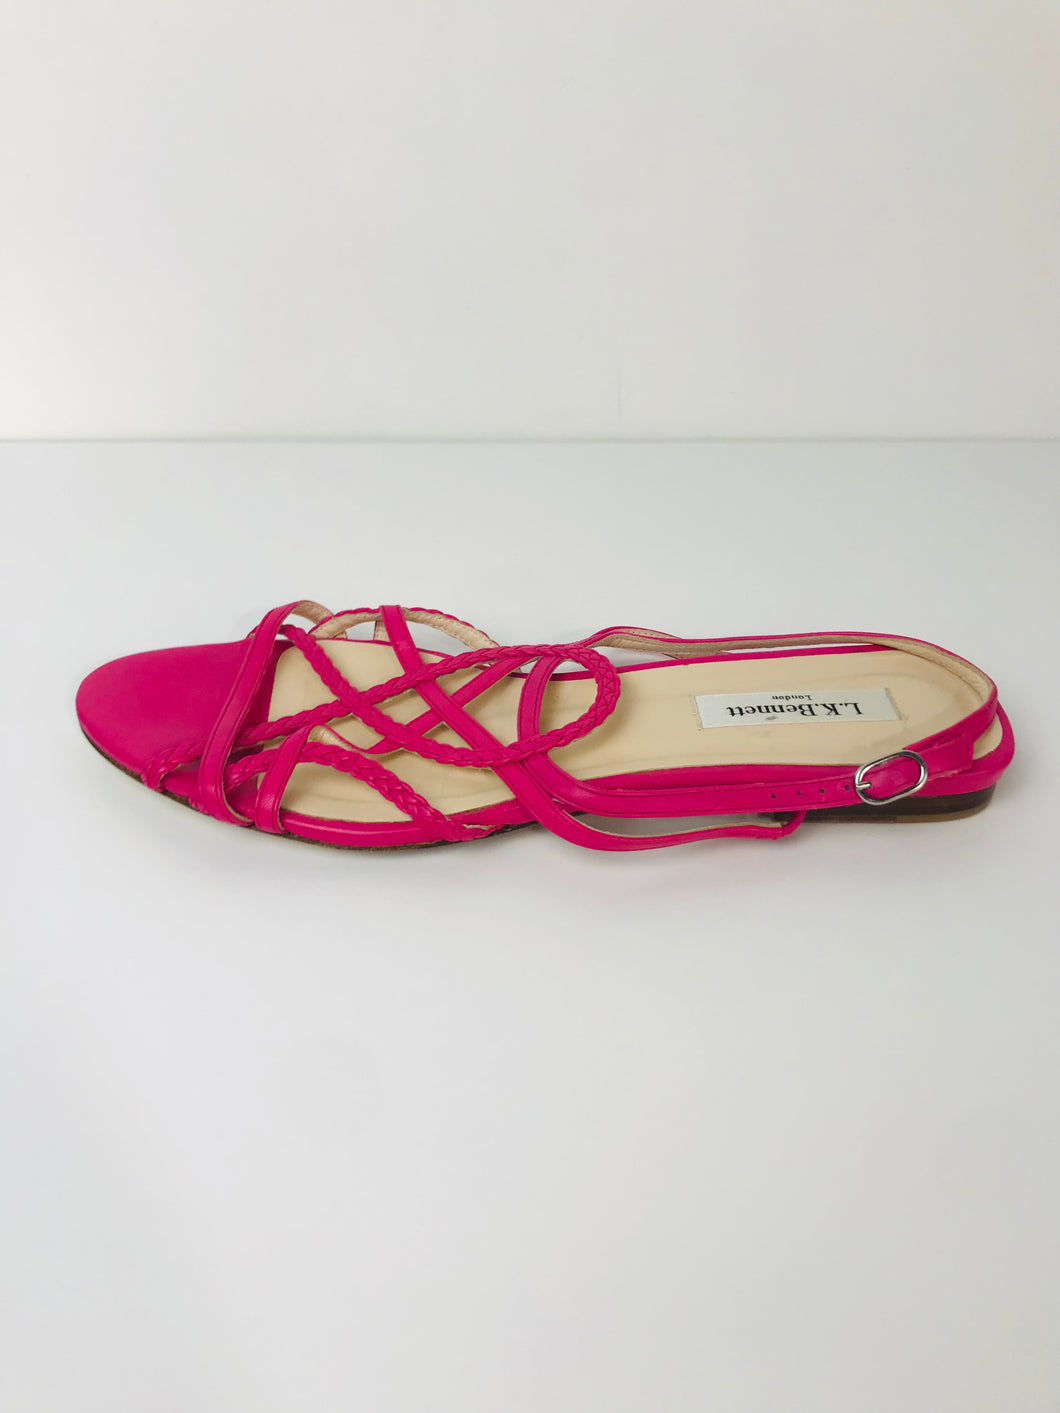 LK Bennett Women's Leather Sandals | EU39.5 UK6.5 | Pink